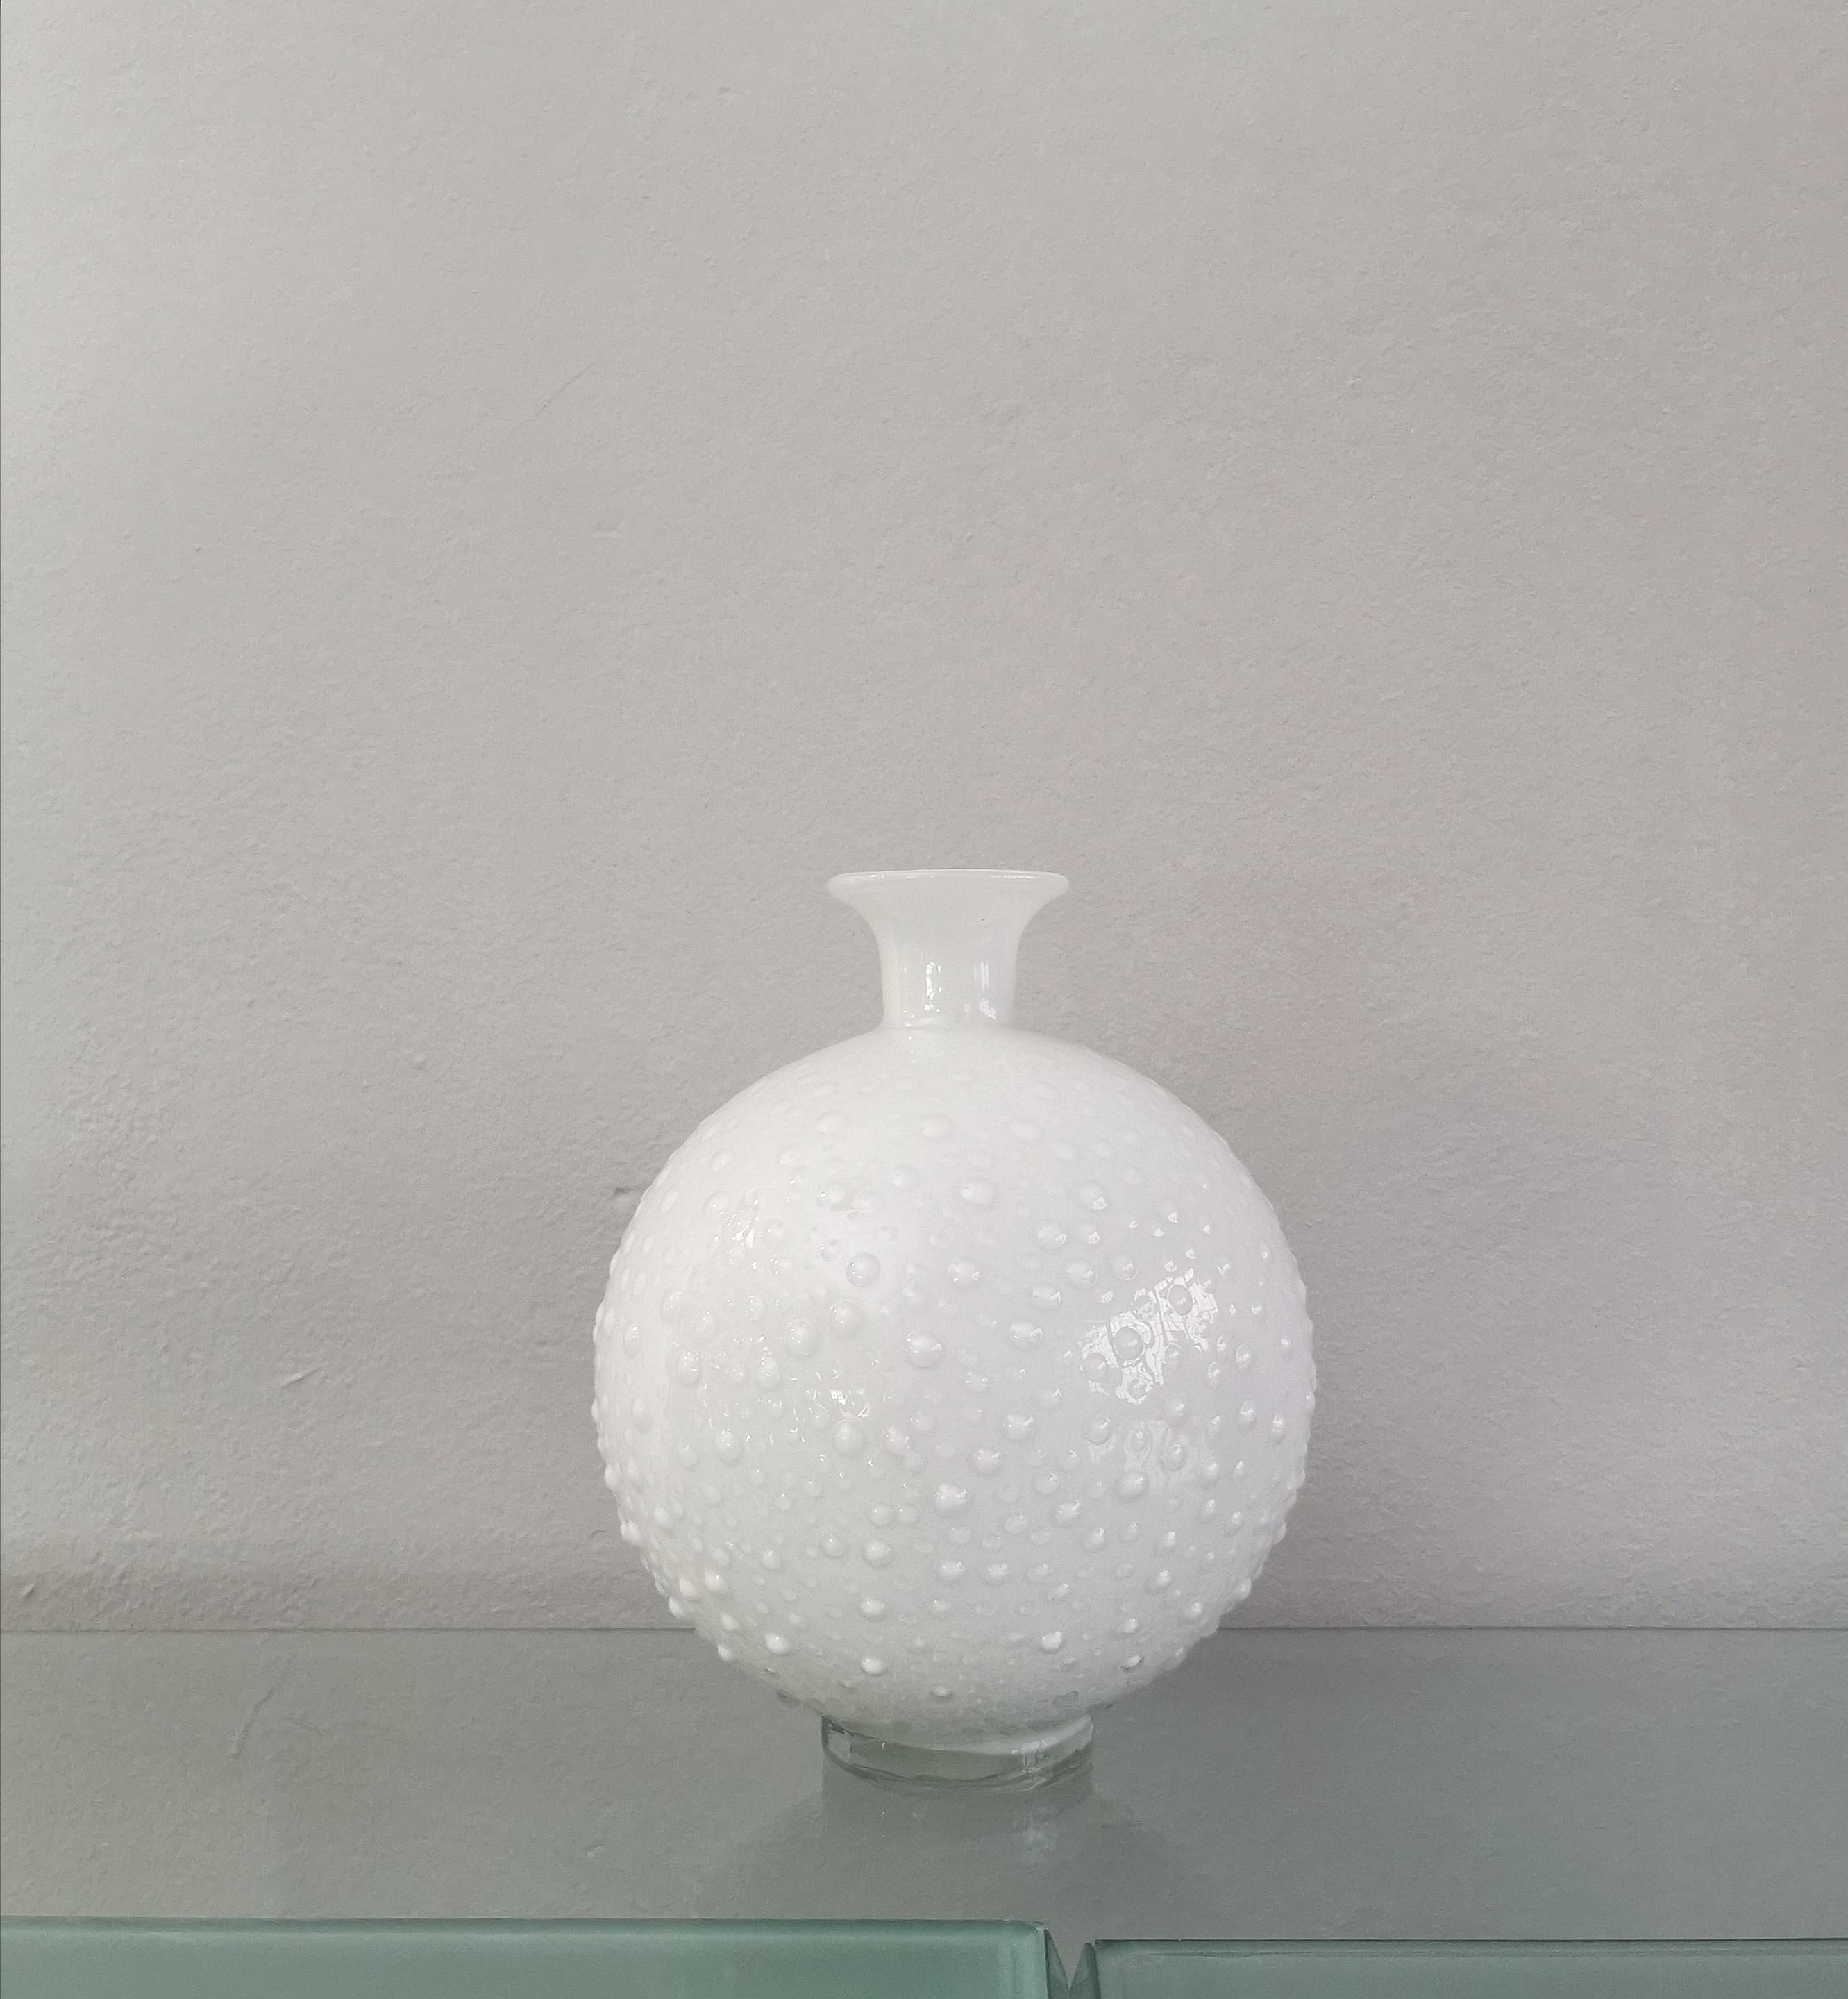 Late 20th Century Vase Vessel White Murano Glass Round Decorative Object Italian Design 1980s For Sale